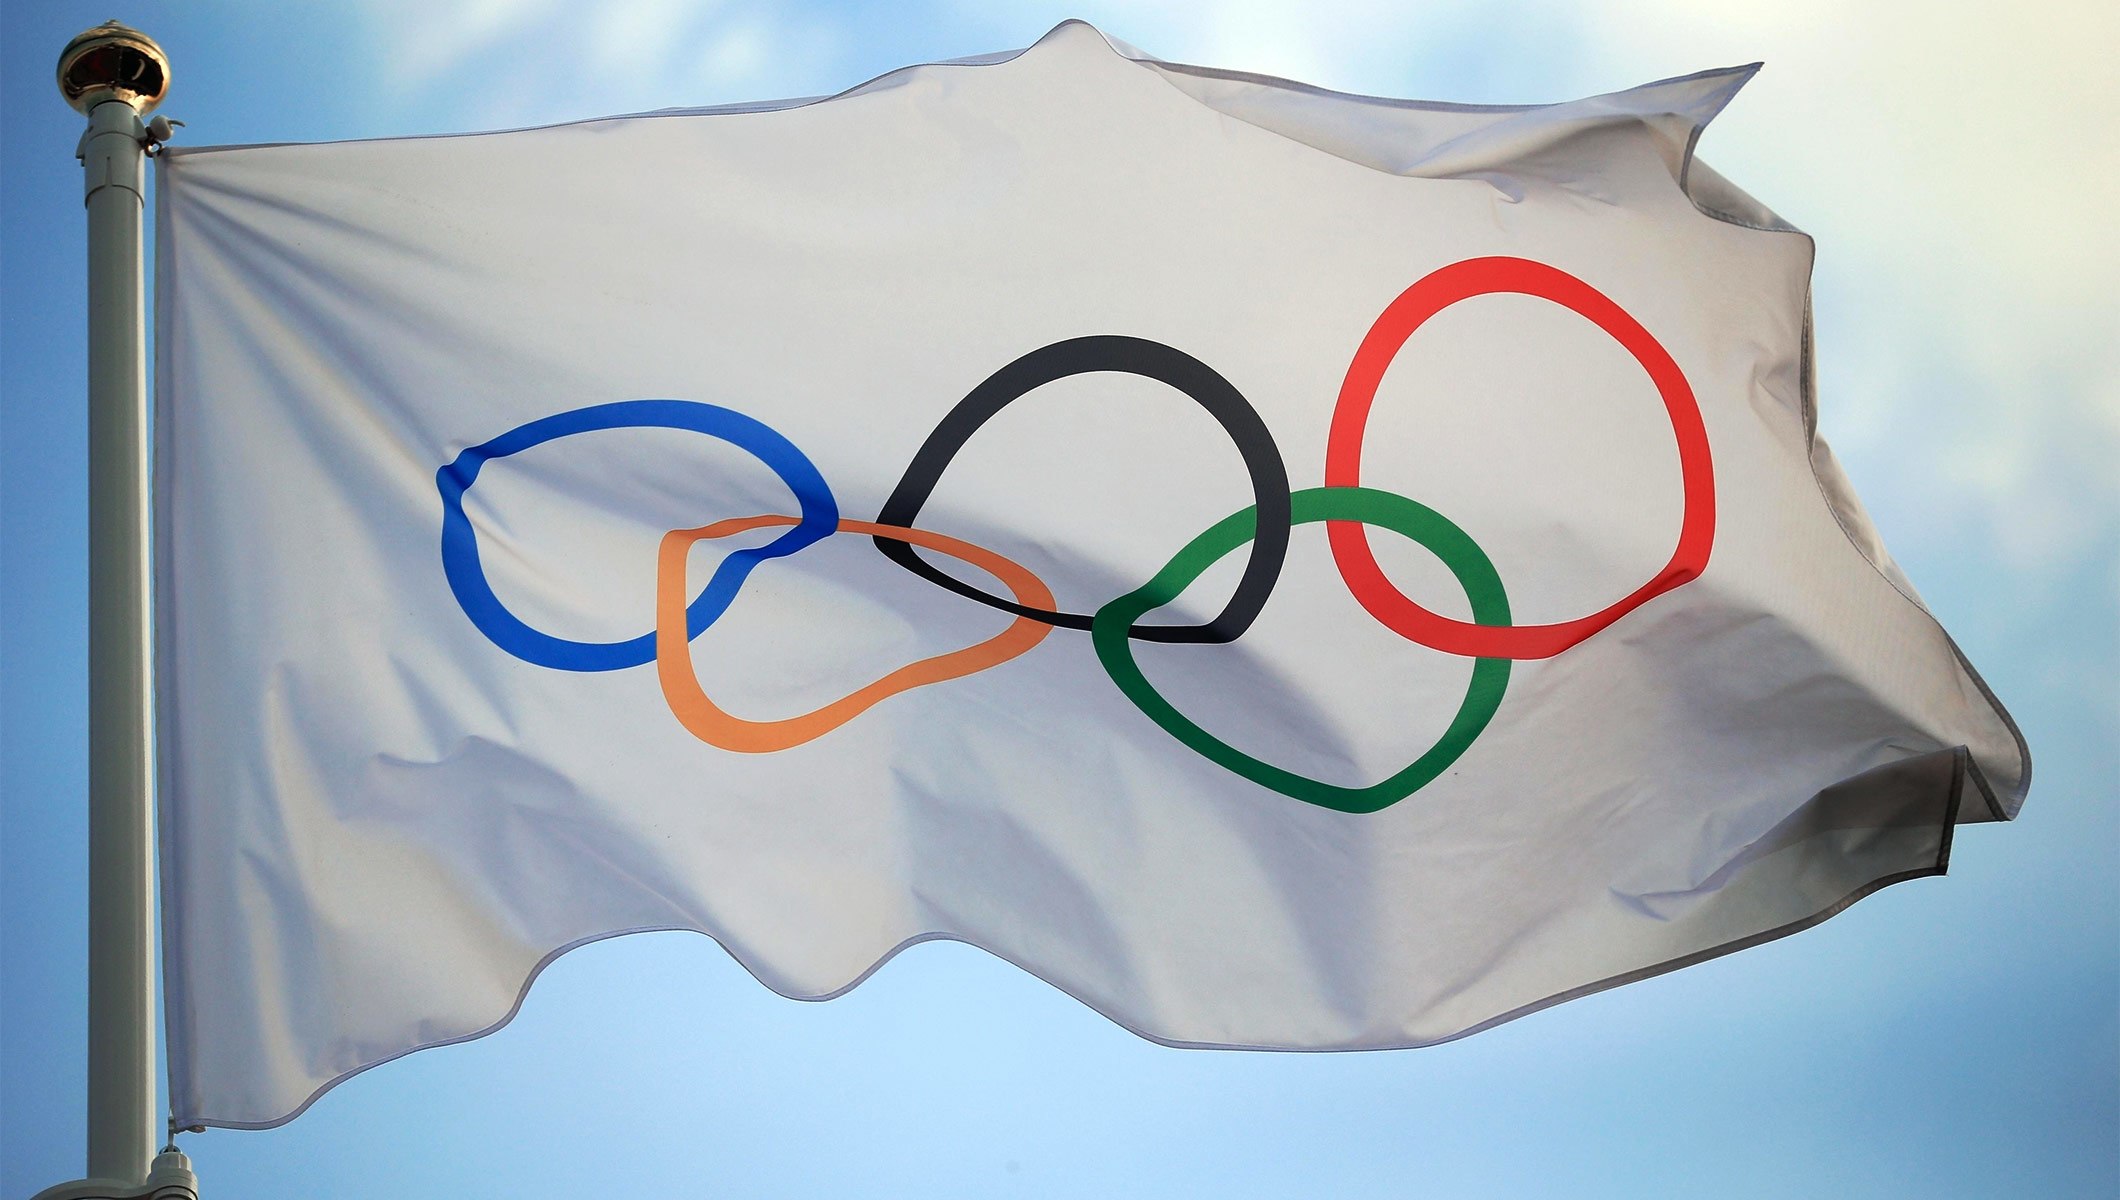 Олимпийский комитет РФ: российские спортсмены готовы участвовать в Олимпиаде-2018 под нейтральным флагом